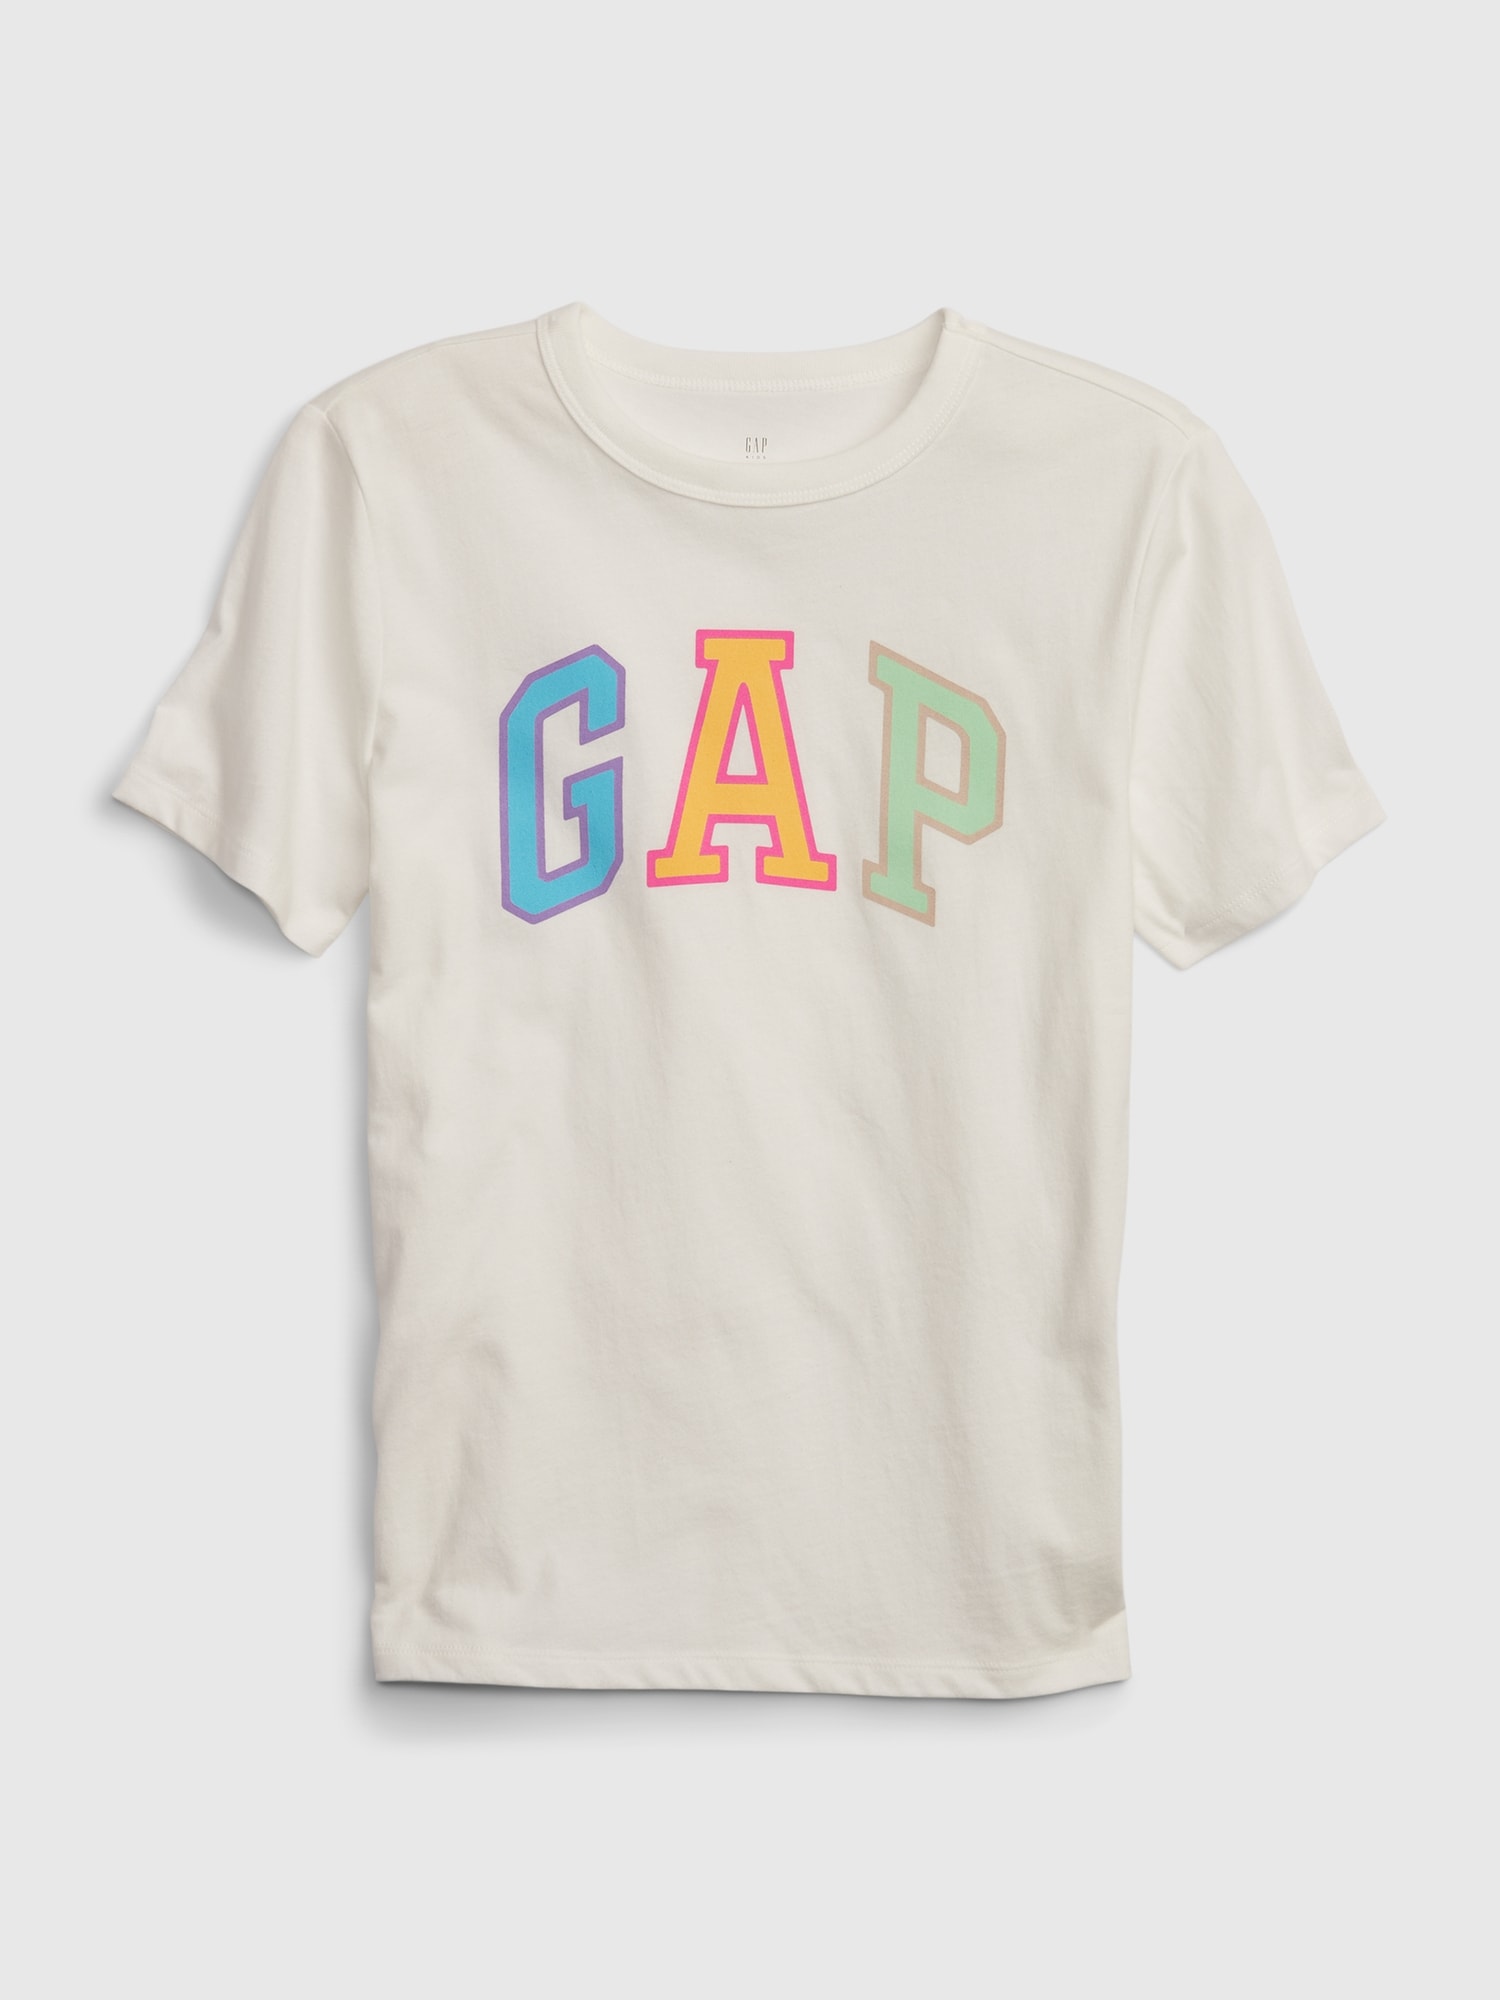 オーガニックコットン100% Gapロゴ Tシャツ (キッズ)